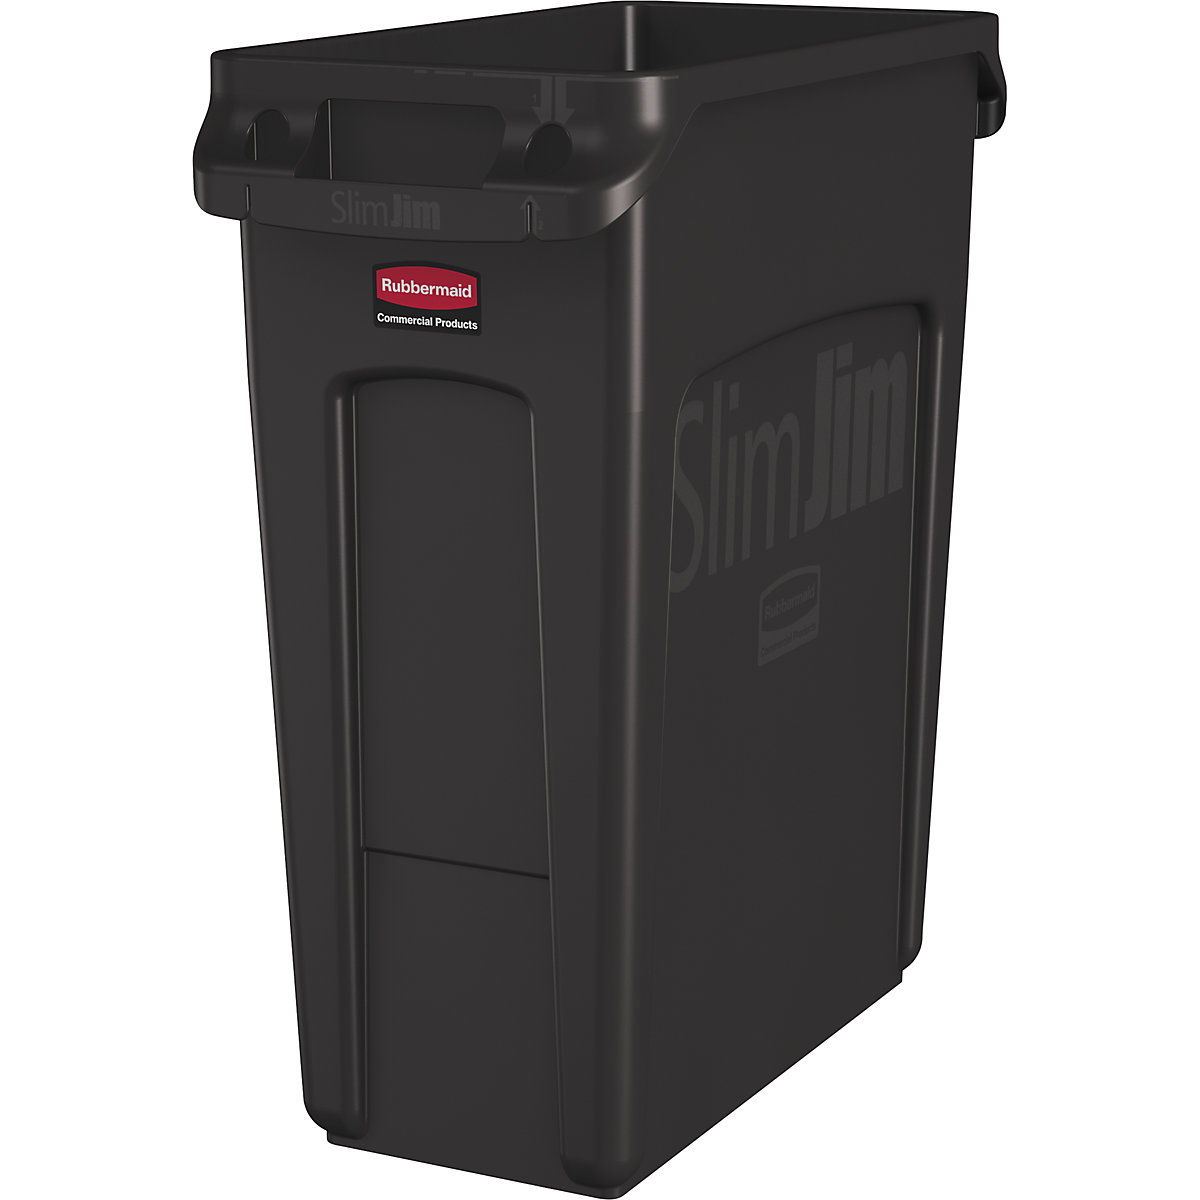 Spremnik za sirovine/kanta za otpad SLIM JIM® – Rubbermaid, volumen 60 l, s kanalima za ventilaciju, u smeđoj boji, od 3 kom.-10